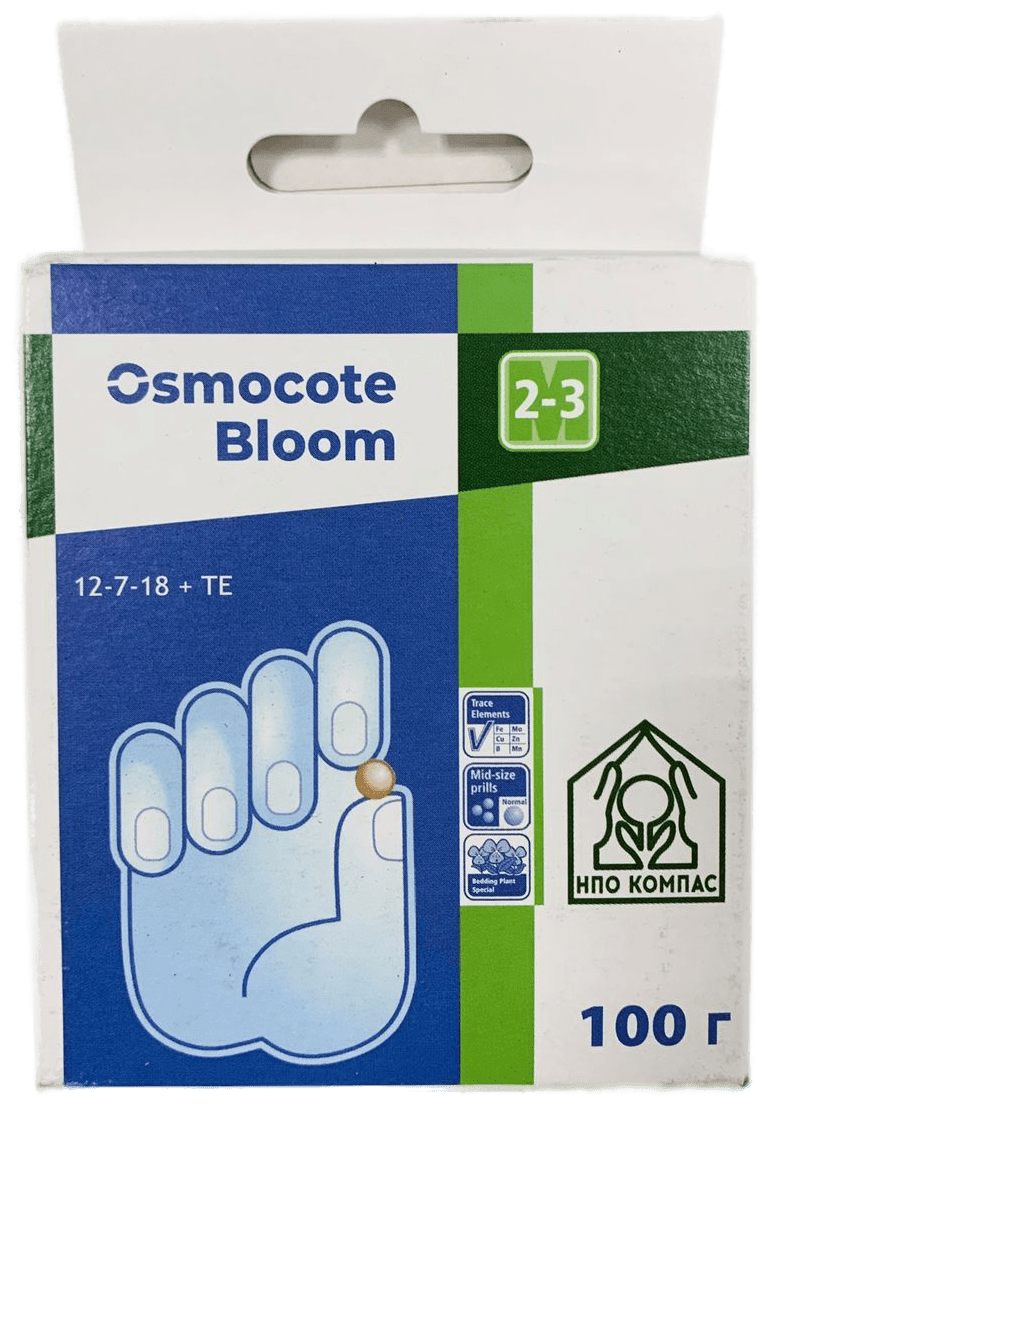 Осмокот Блюм 12-7-18+ мэ, удобрение пролонгированного действия 2-3 месяца Osmocote Bloom (Голландия), 0,1 кг